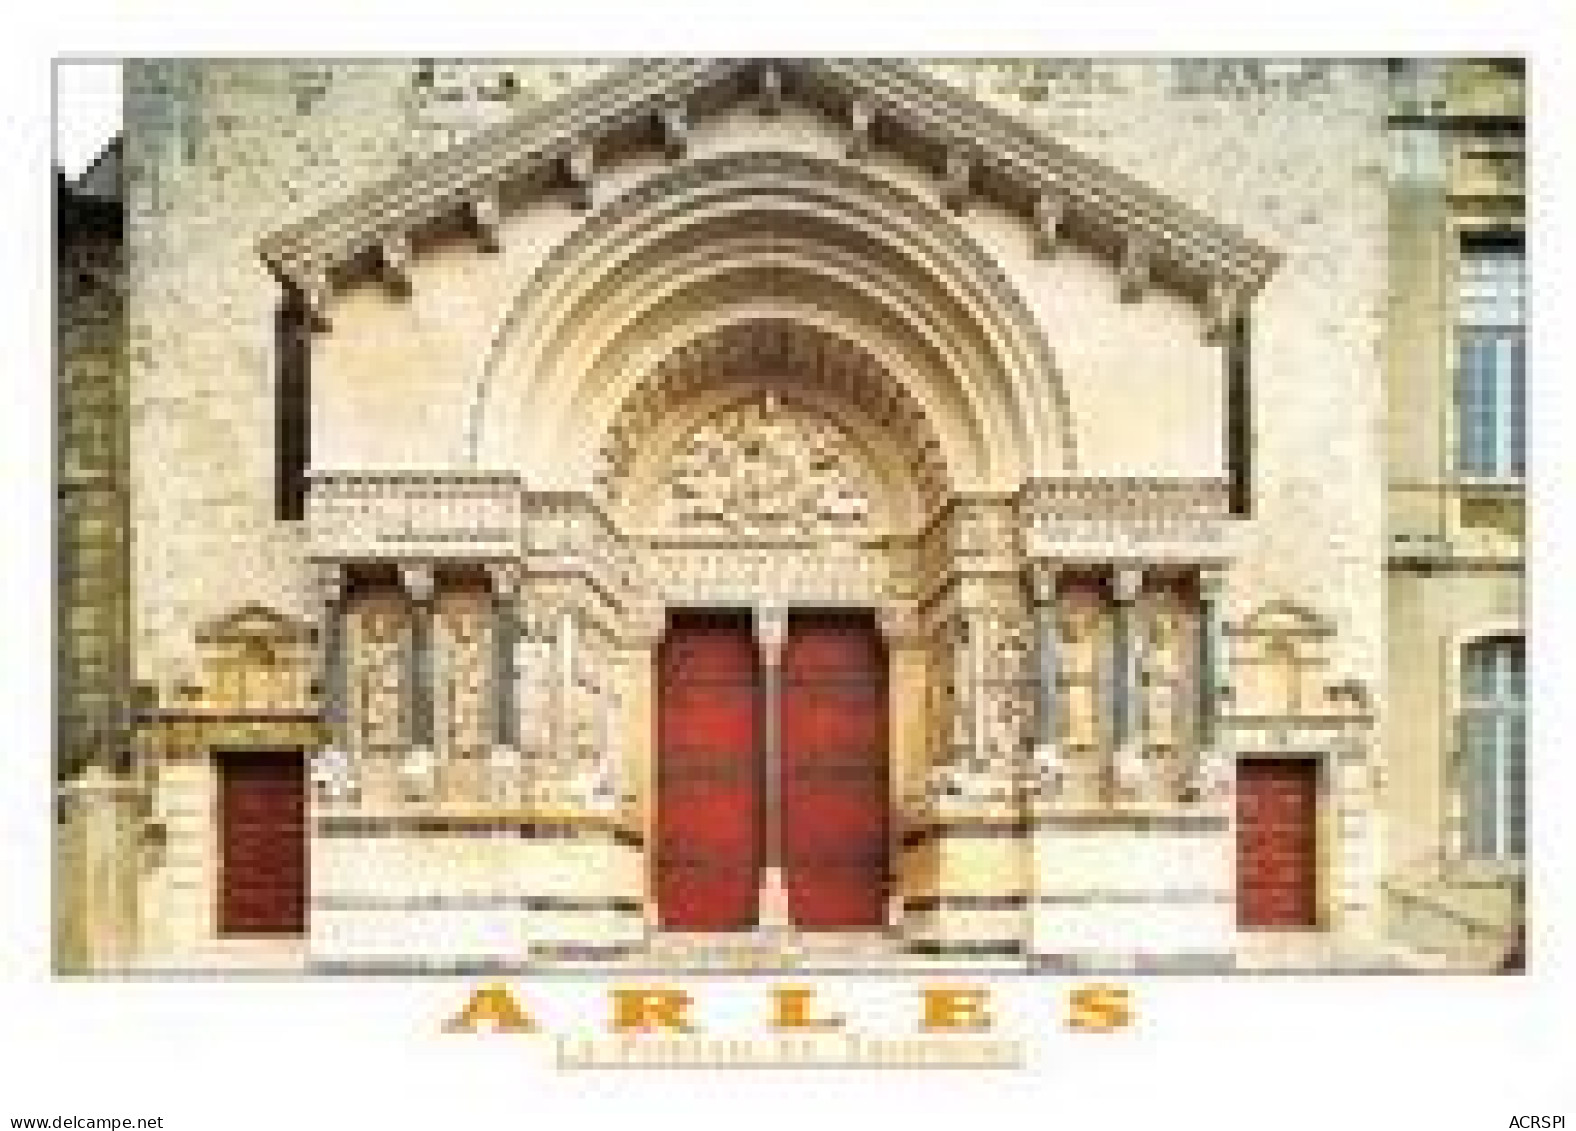 ARLES lot de 103 cartes de la ville  des Bouches-du-Rhone cartes vierges non circulés CPM (Scan R/V) N°   1   \MT9101